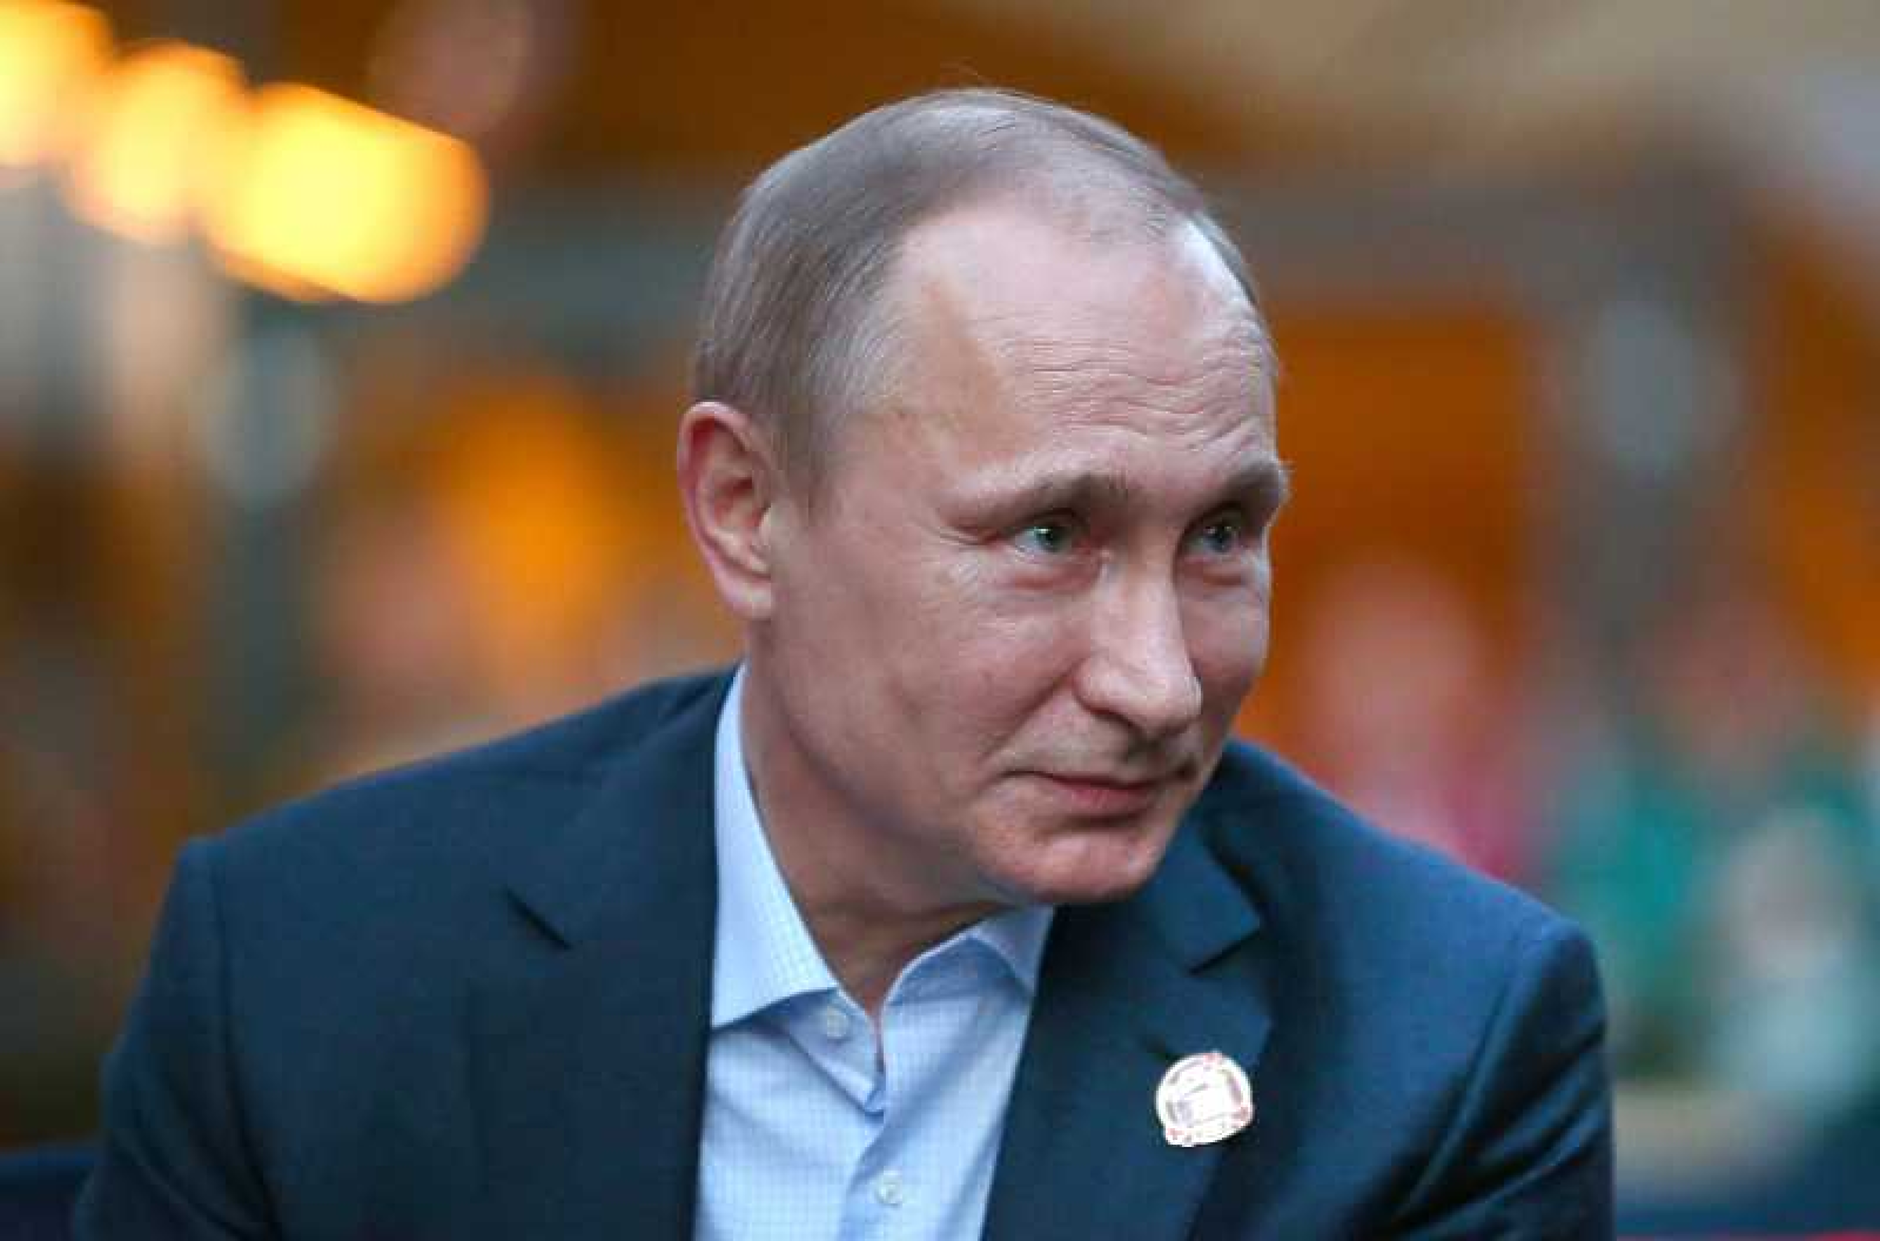 Екзитпол: Путин печели убедително президентските избори